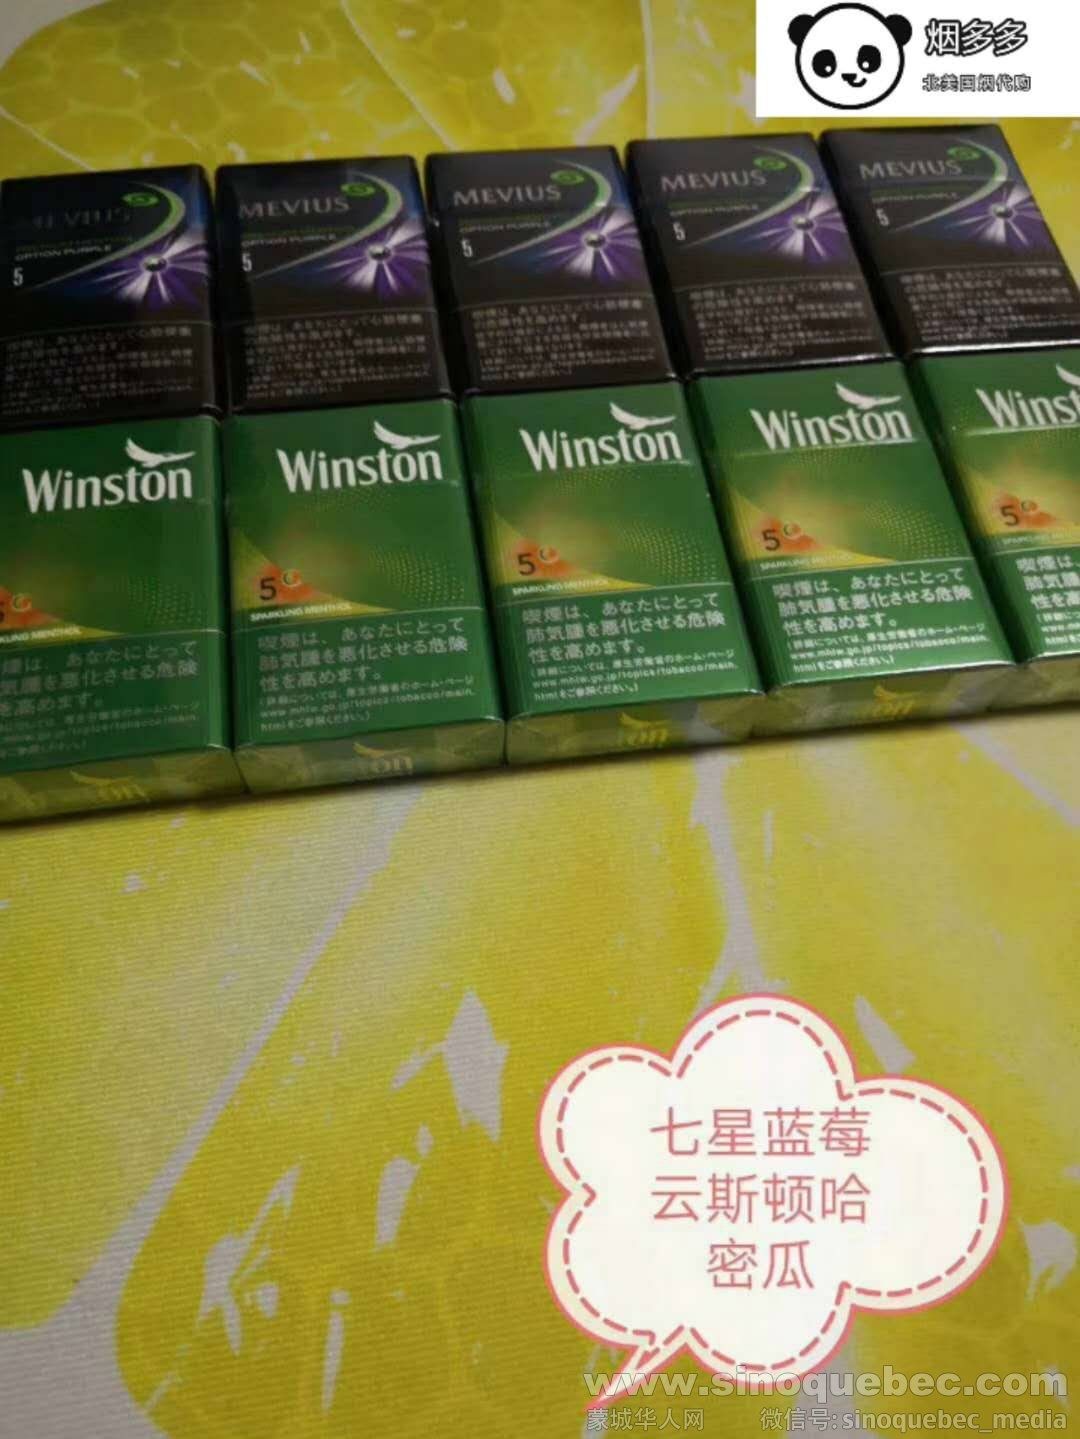 WeChat Image_20190606033624.jpg